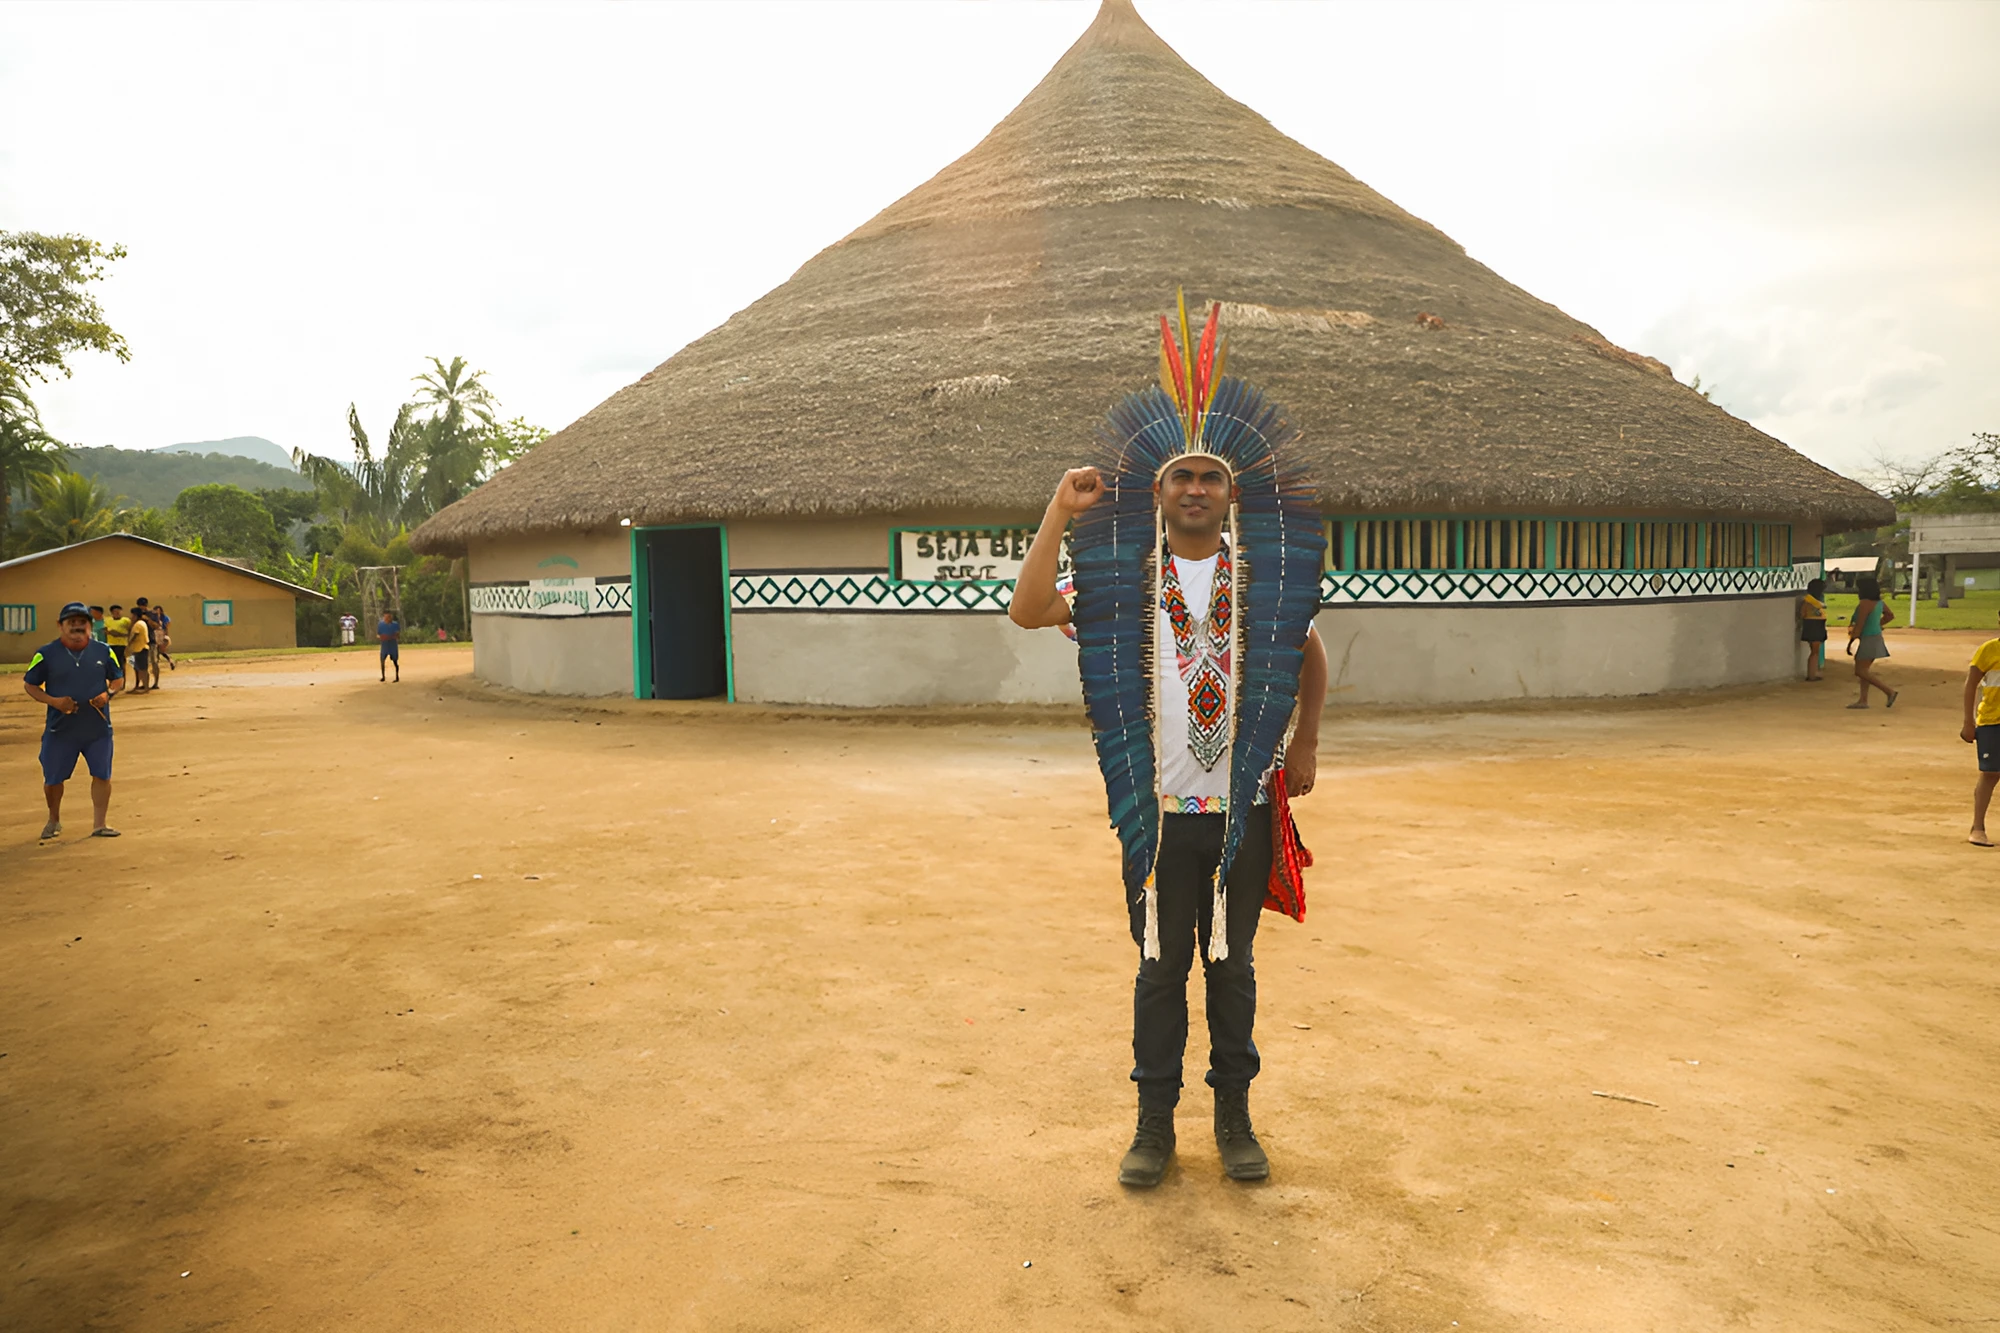 Weibe Tapeba coordenou a Federação dos Povos e Organizações Indígenas do Ceará (Fepoince). — Foto: Reprodução.